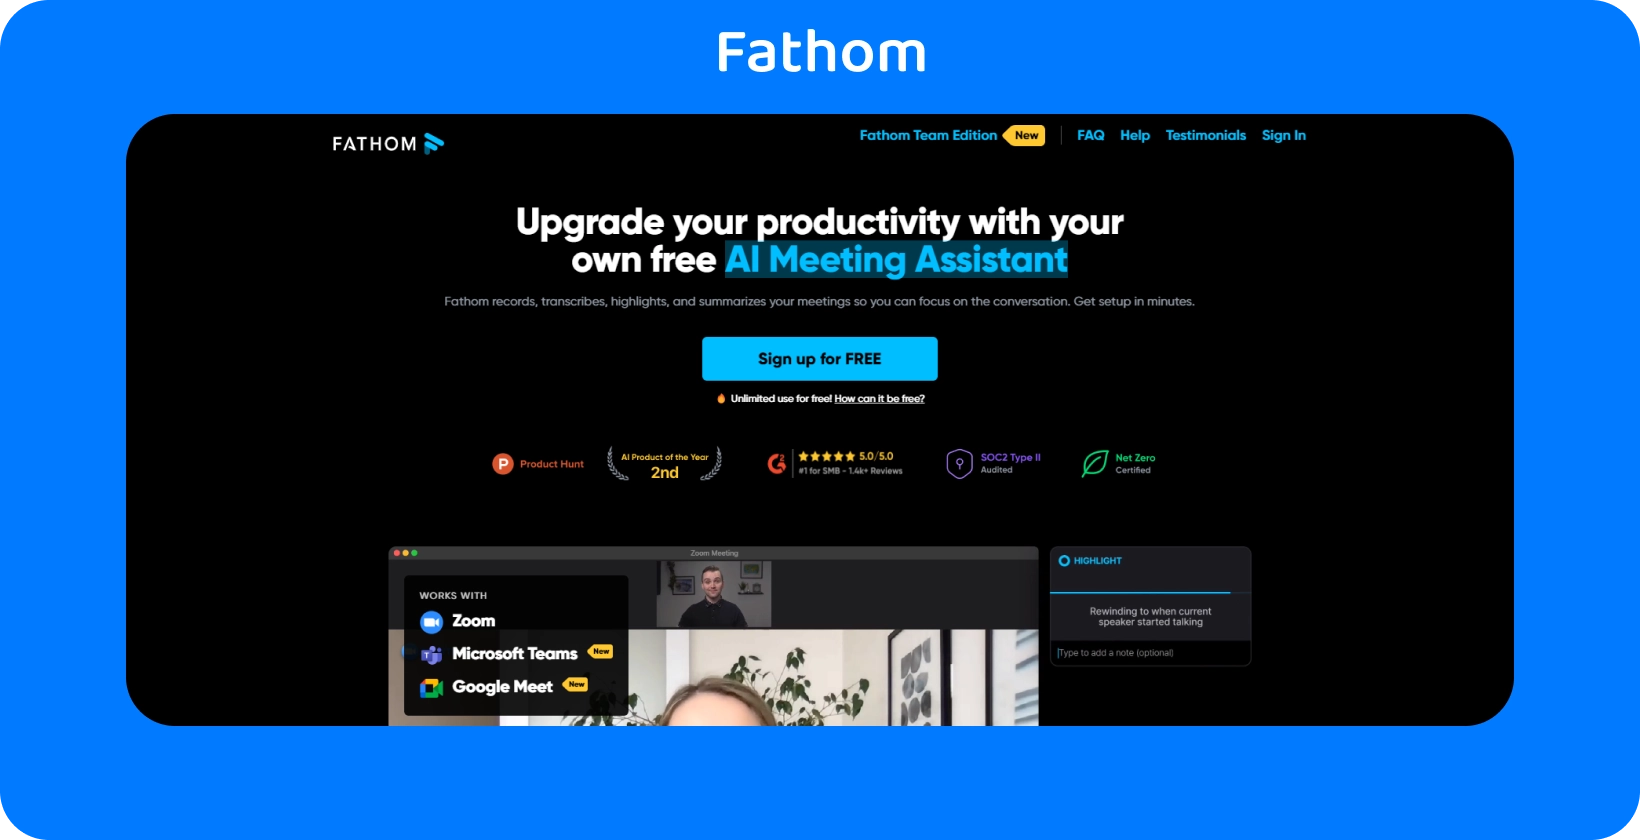 Fathoms webbsida visar sin AI Meeting Assistant för ökad produktivitet genom inspelnings- och transkriberingstjänster.